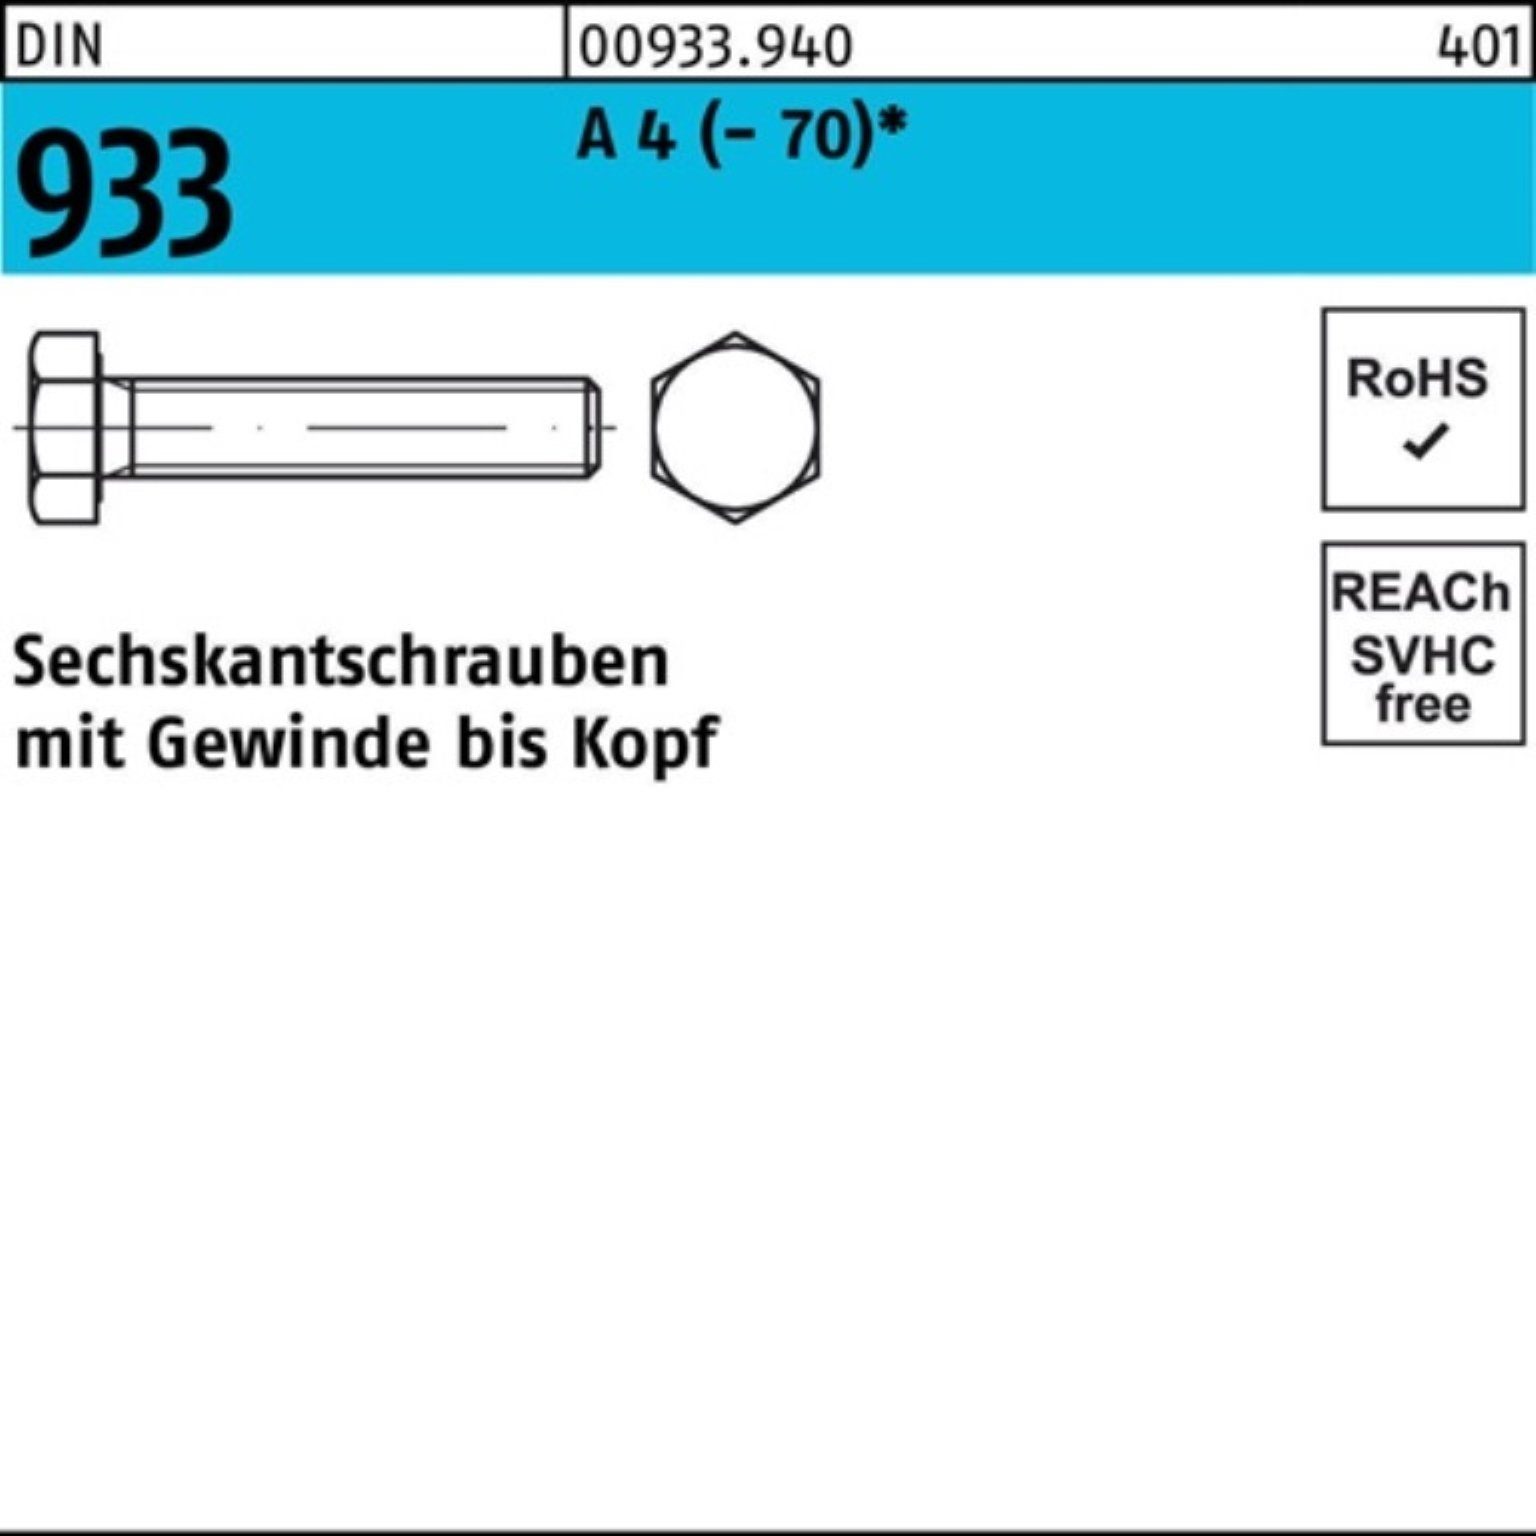 Reyher Sechskantschraube 100er DIN 4 Pack (70) VG Stück M8x 933 DI 1 A 170 Sechskantschraube